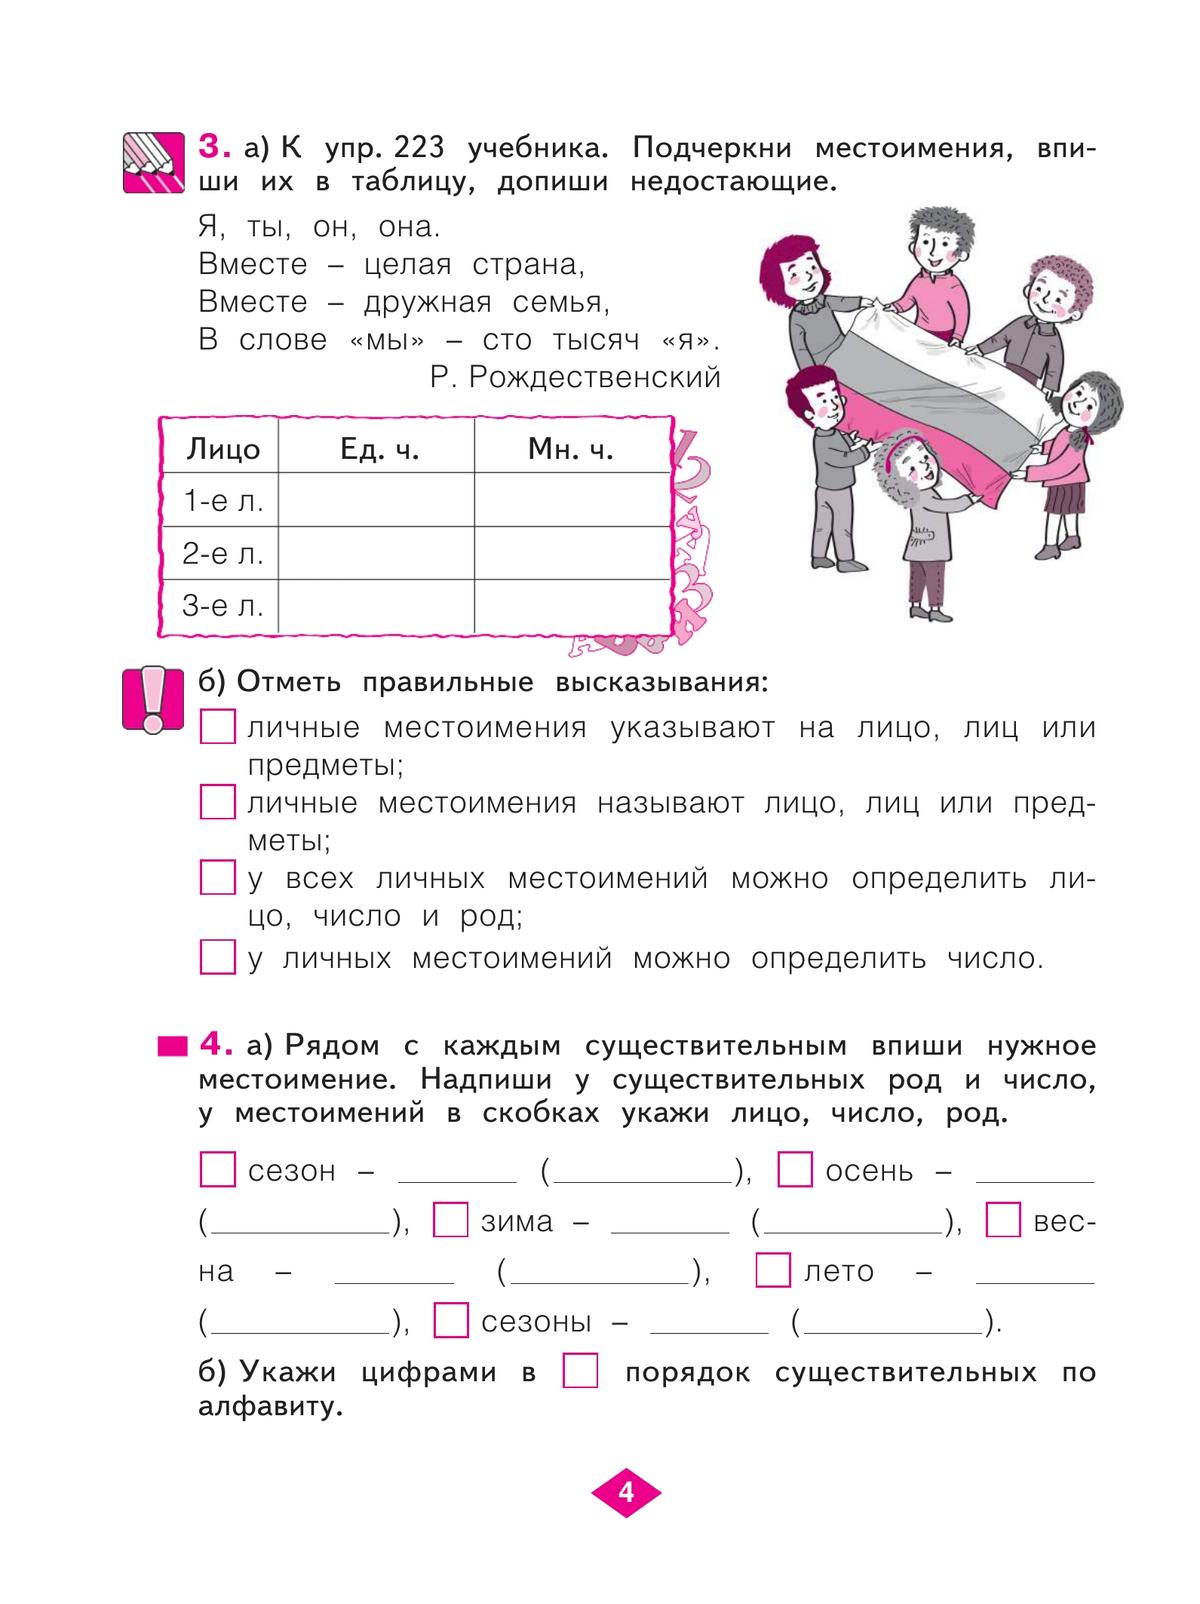 Русский язык. Рабочая тетрадь. 4 класс. В 4-х частях. Часть 2 2